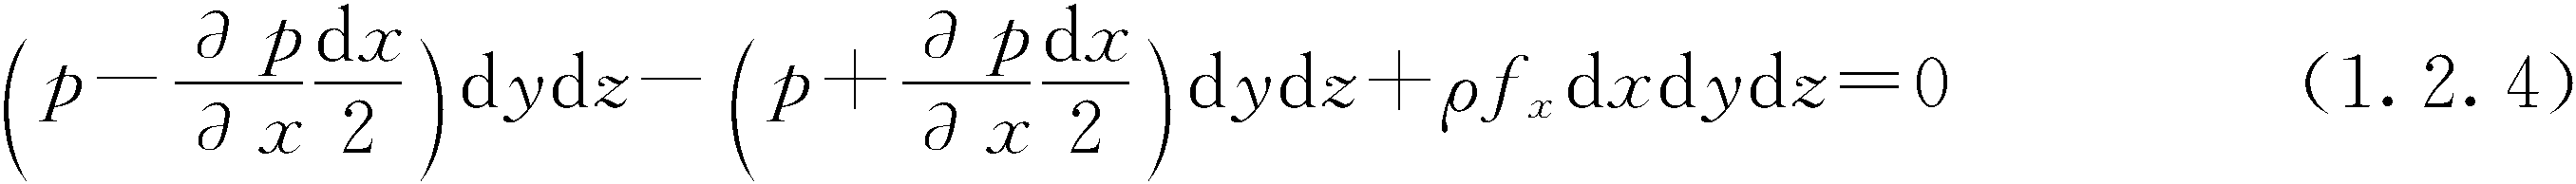 1.2.2 液体平衡微分方程及其积分